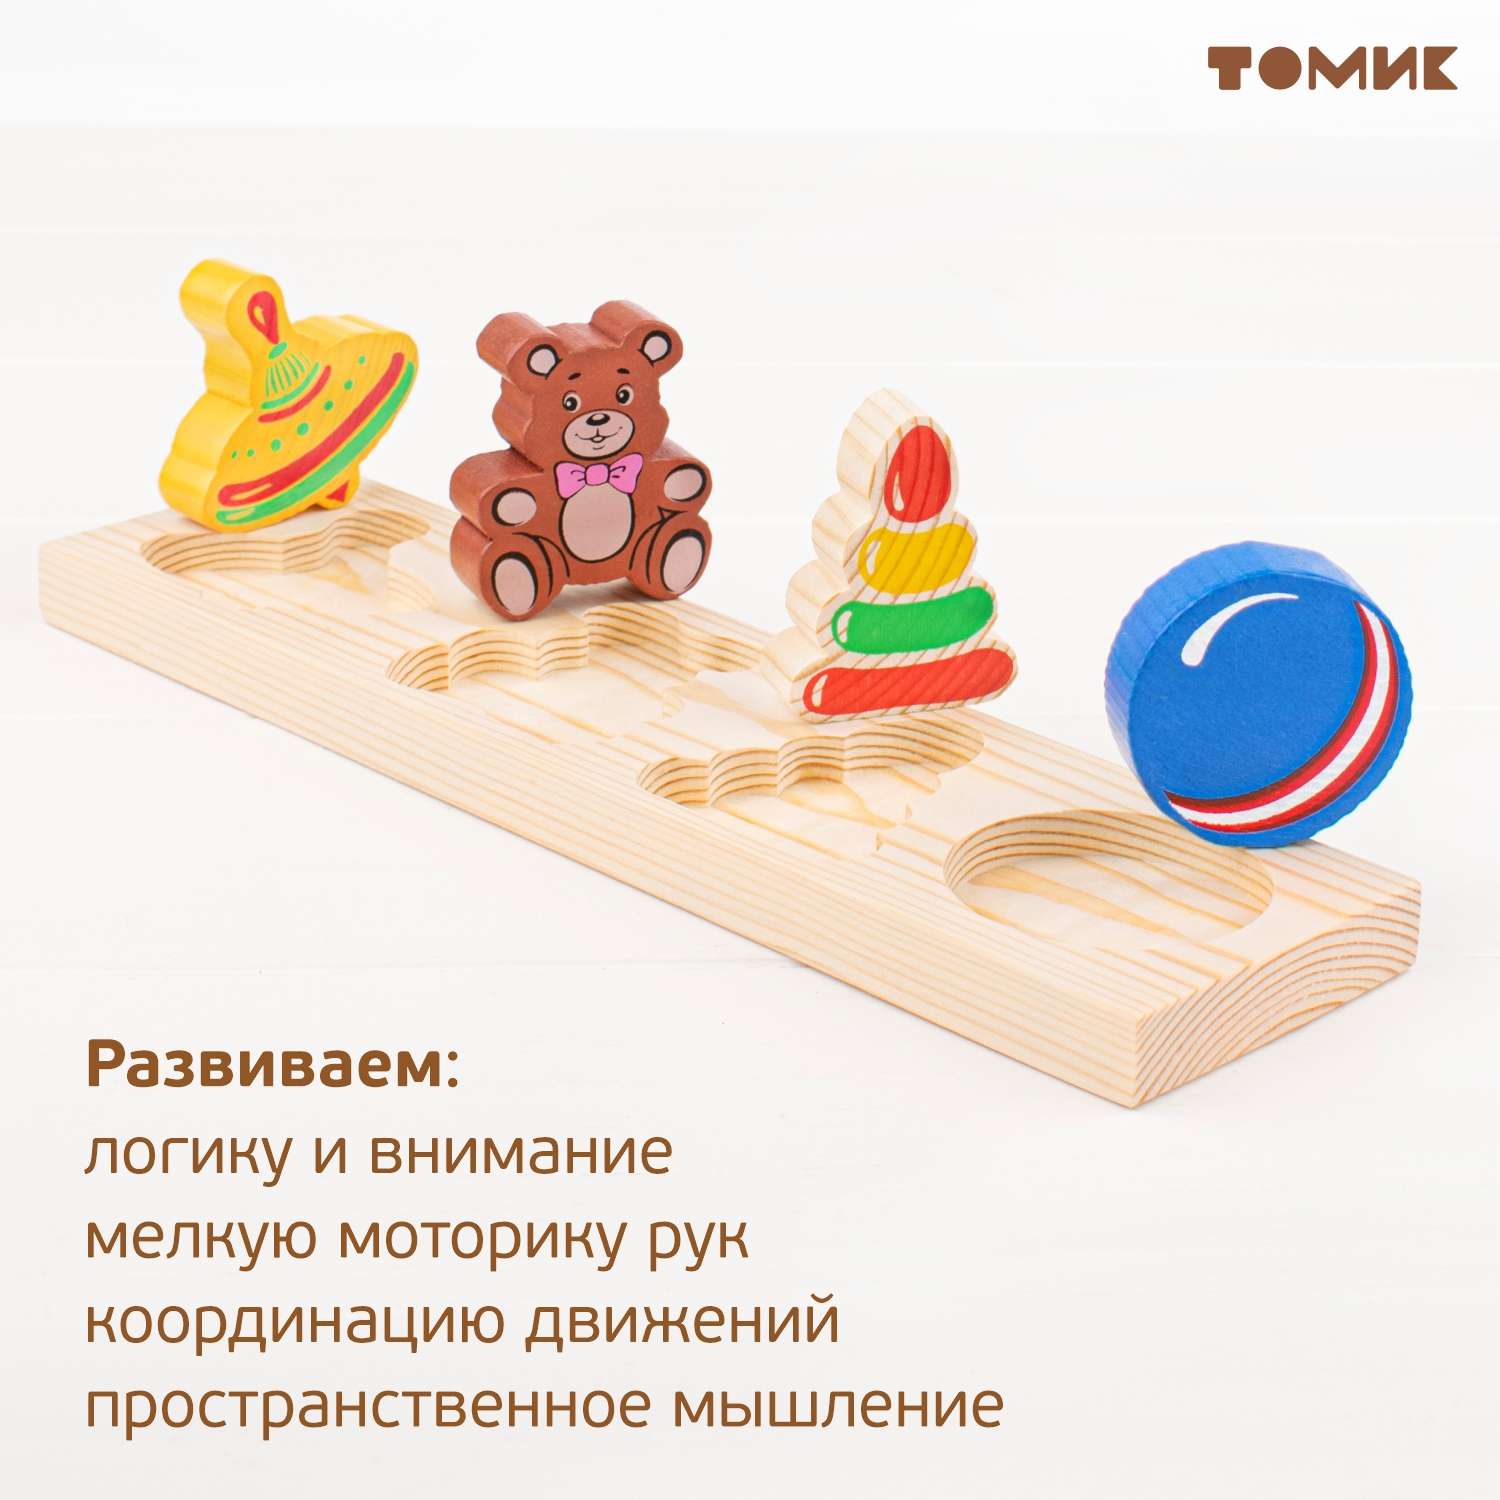 Рамка-Вкладыш Томик Игрушки 5 деталей 451 развивающая деревянная игрушка - фото 10